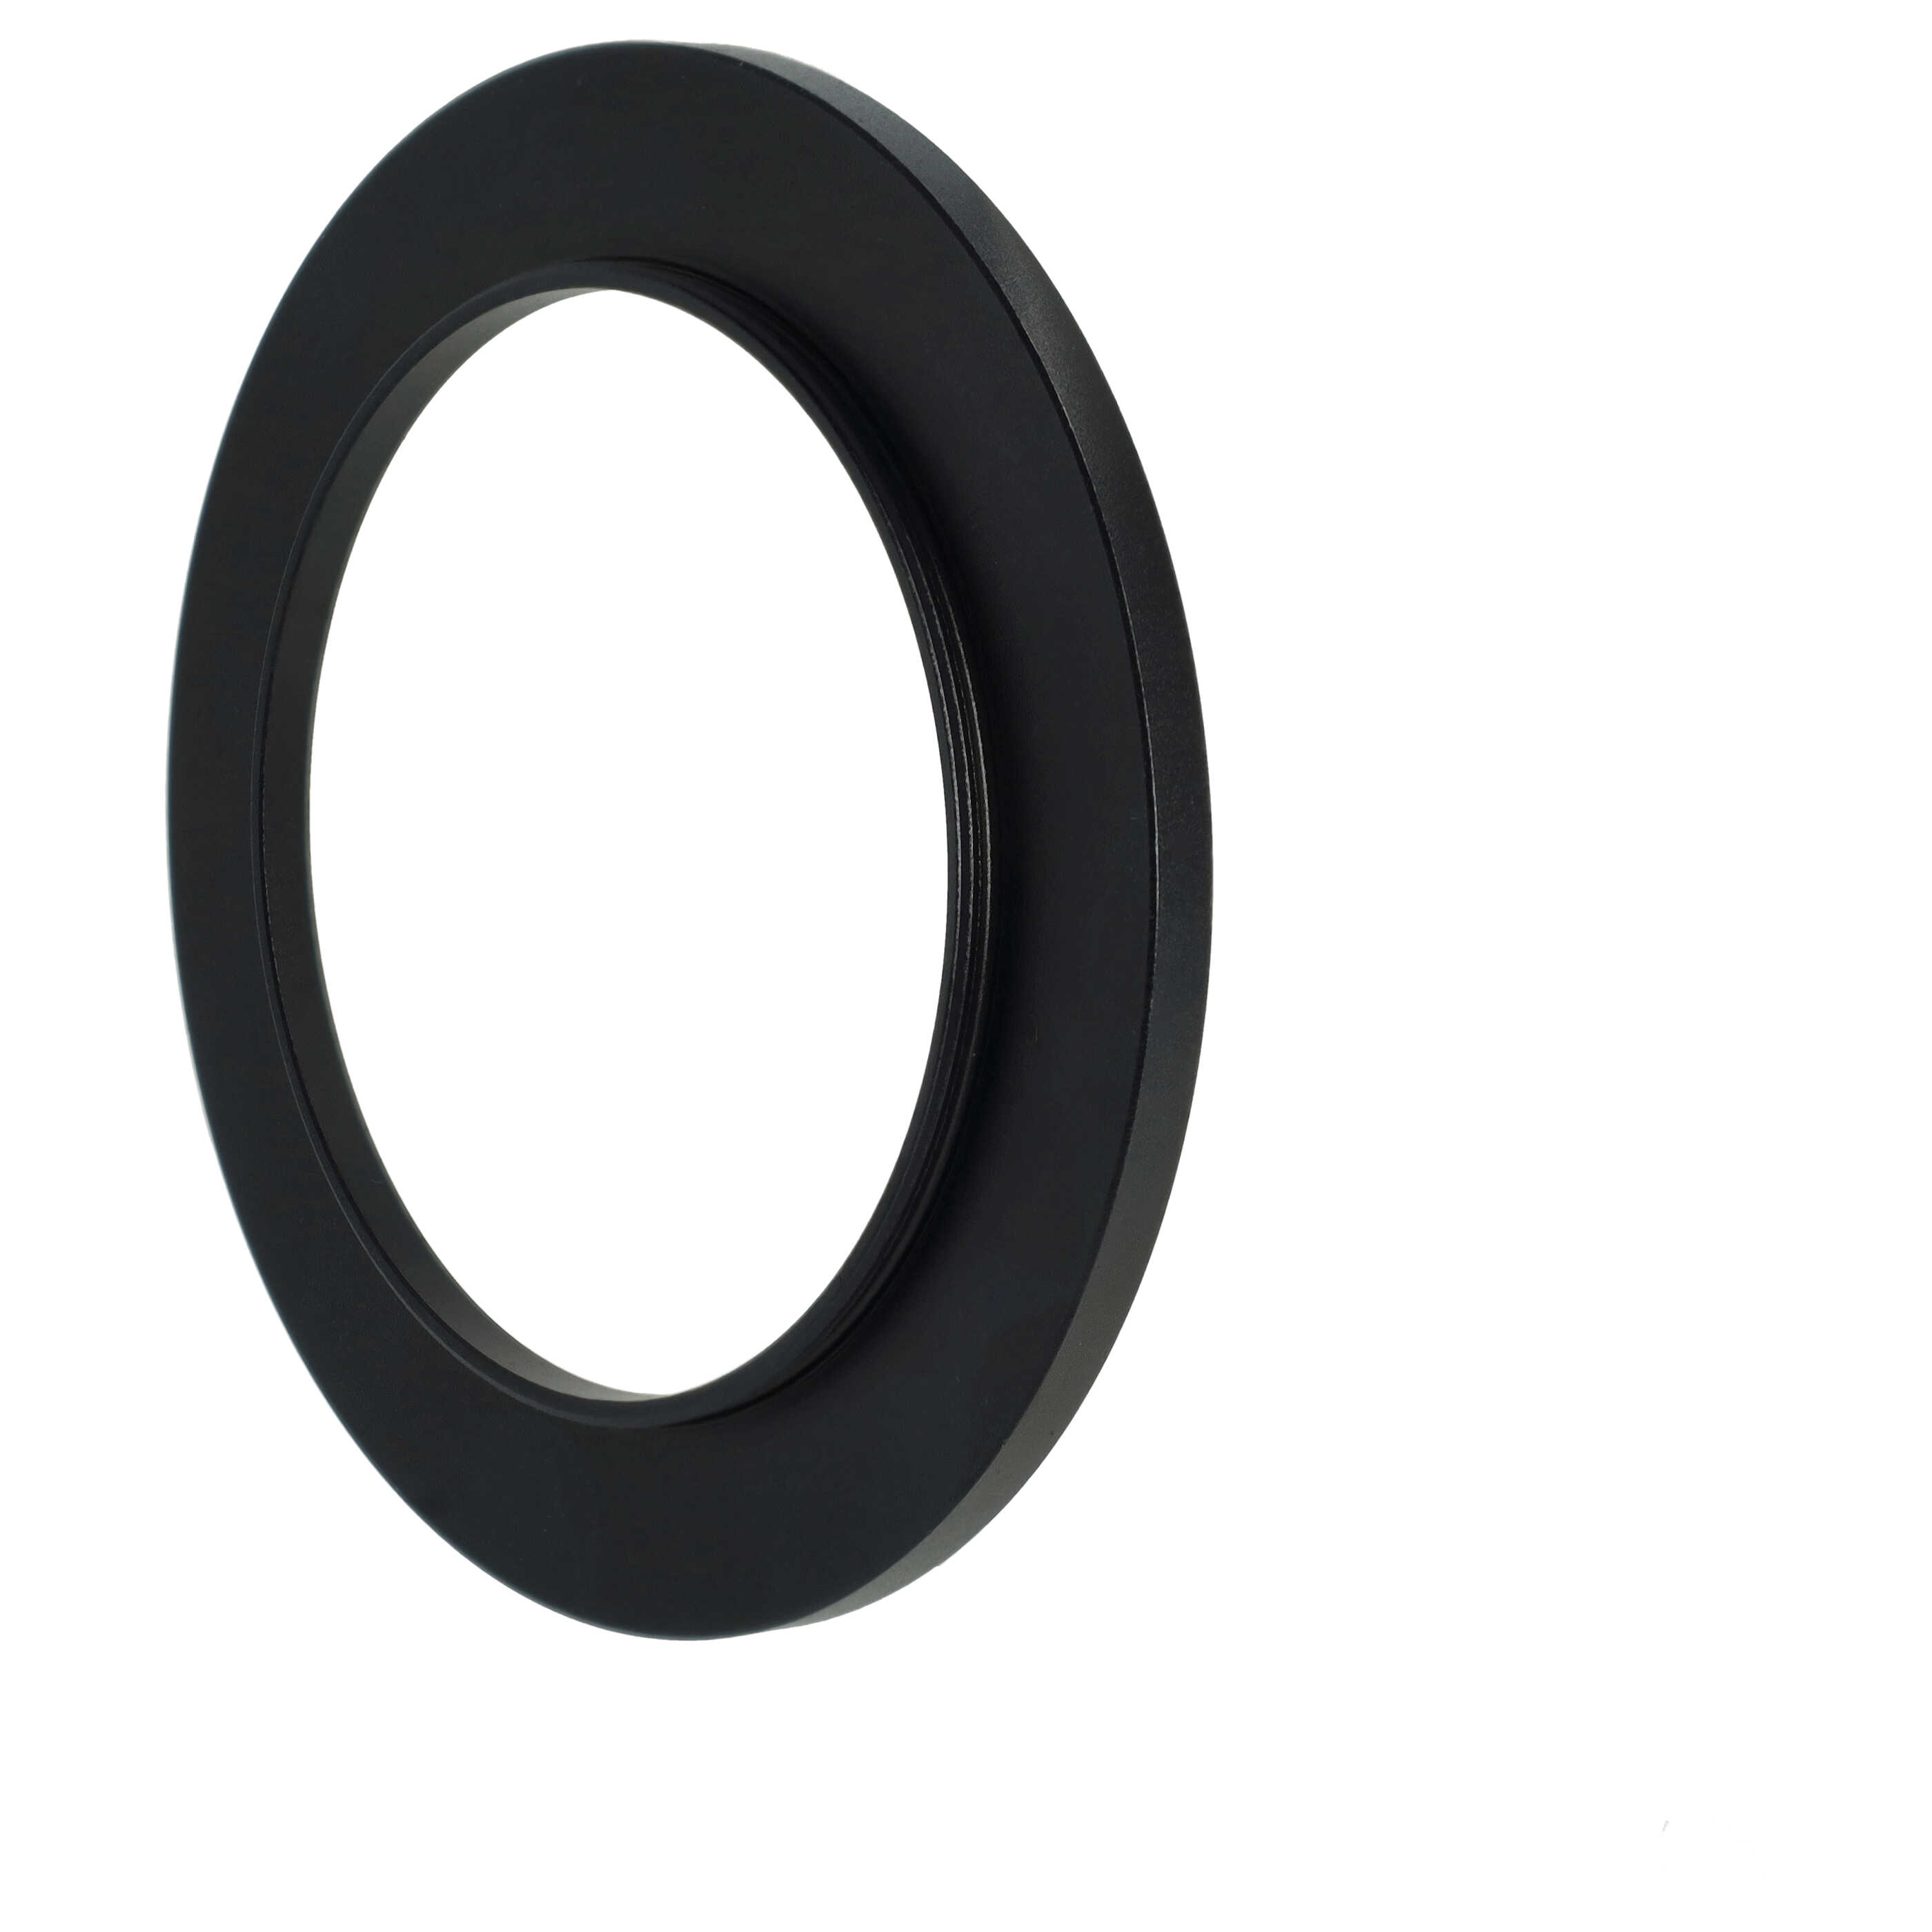 Step-Up-Ring Adapter 58 mm auf 77 mm passend für diverse Kamera-Objektive - Filteradapter